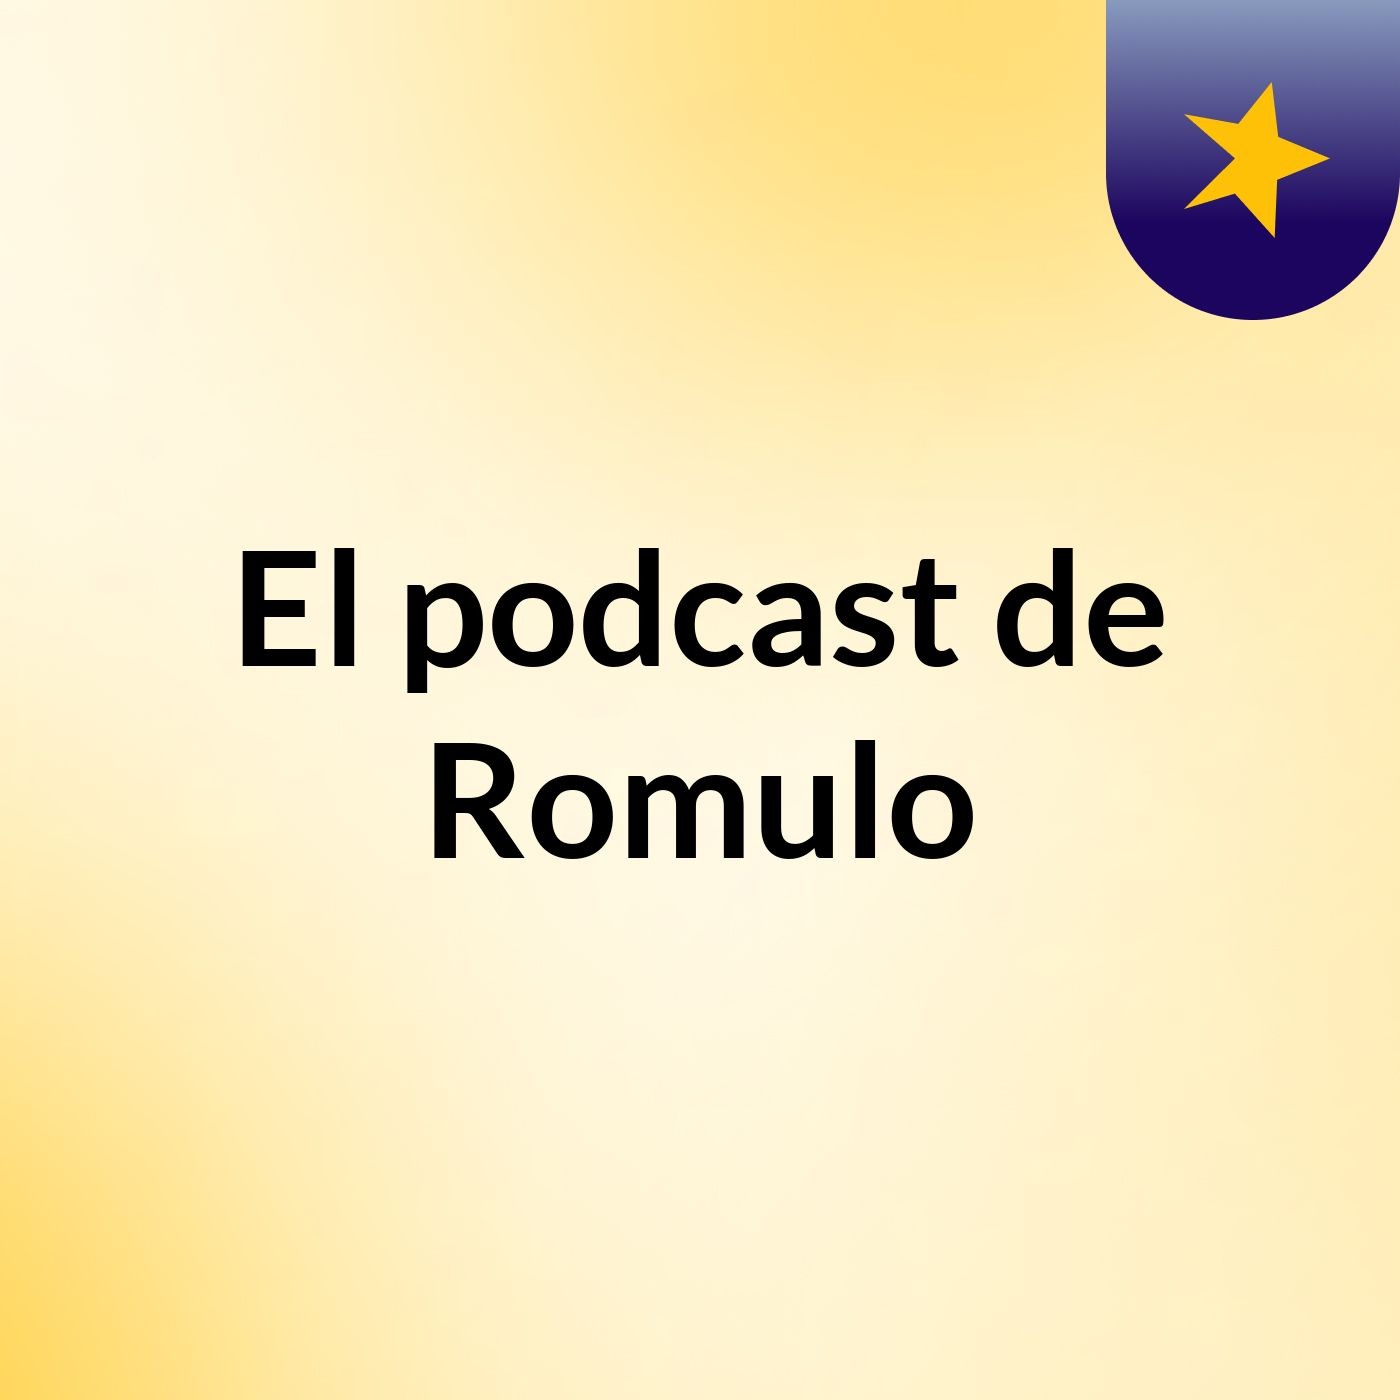 El podcast de Romulo